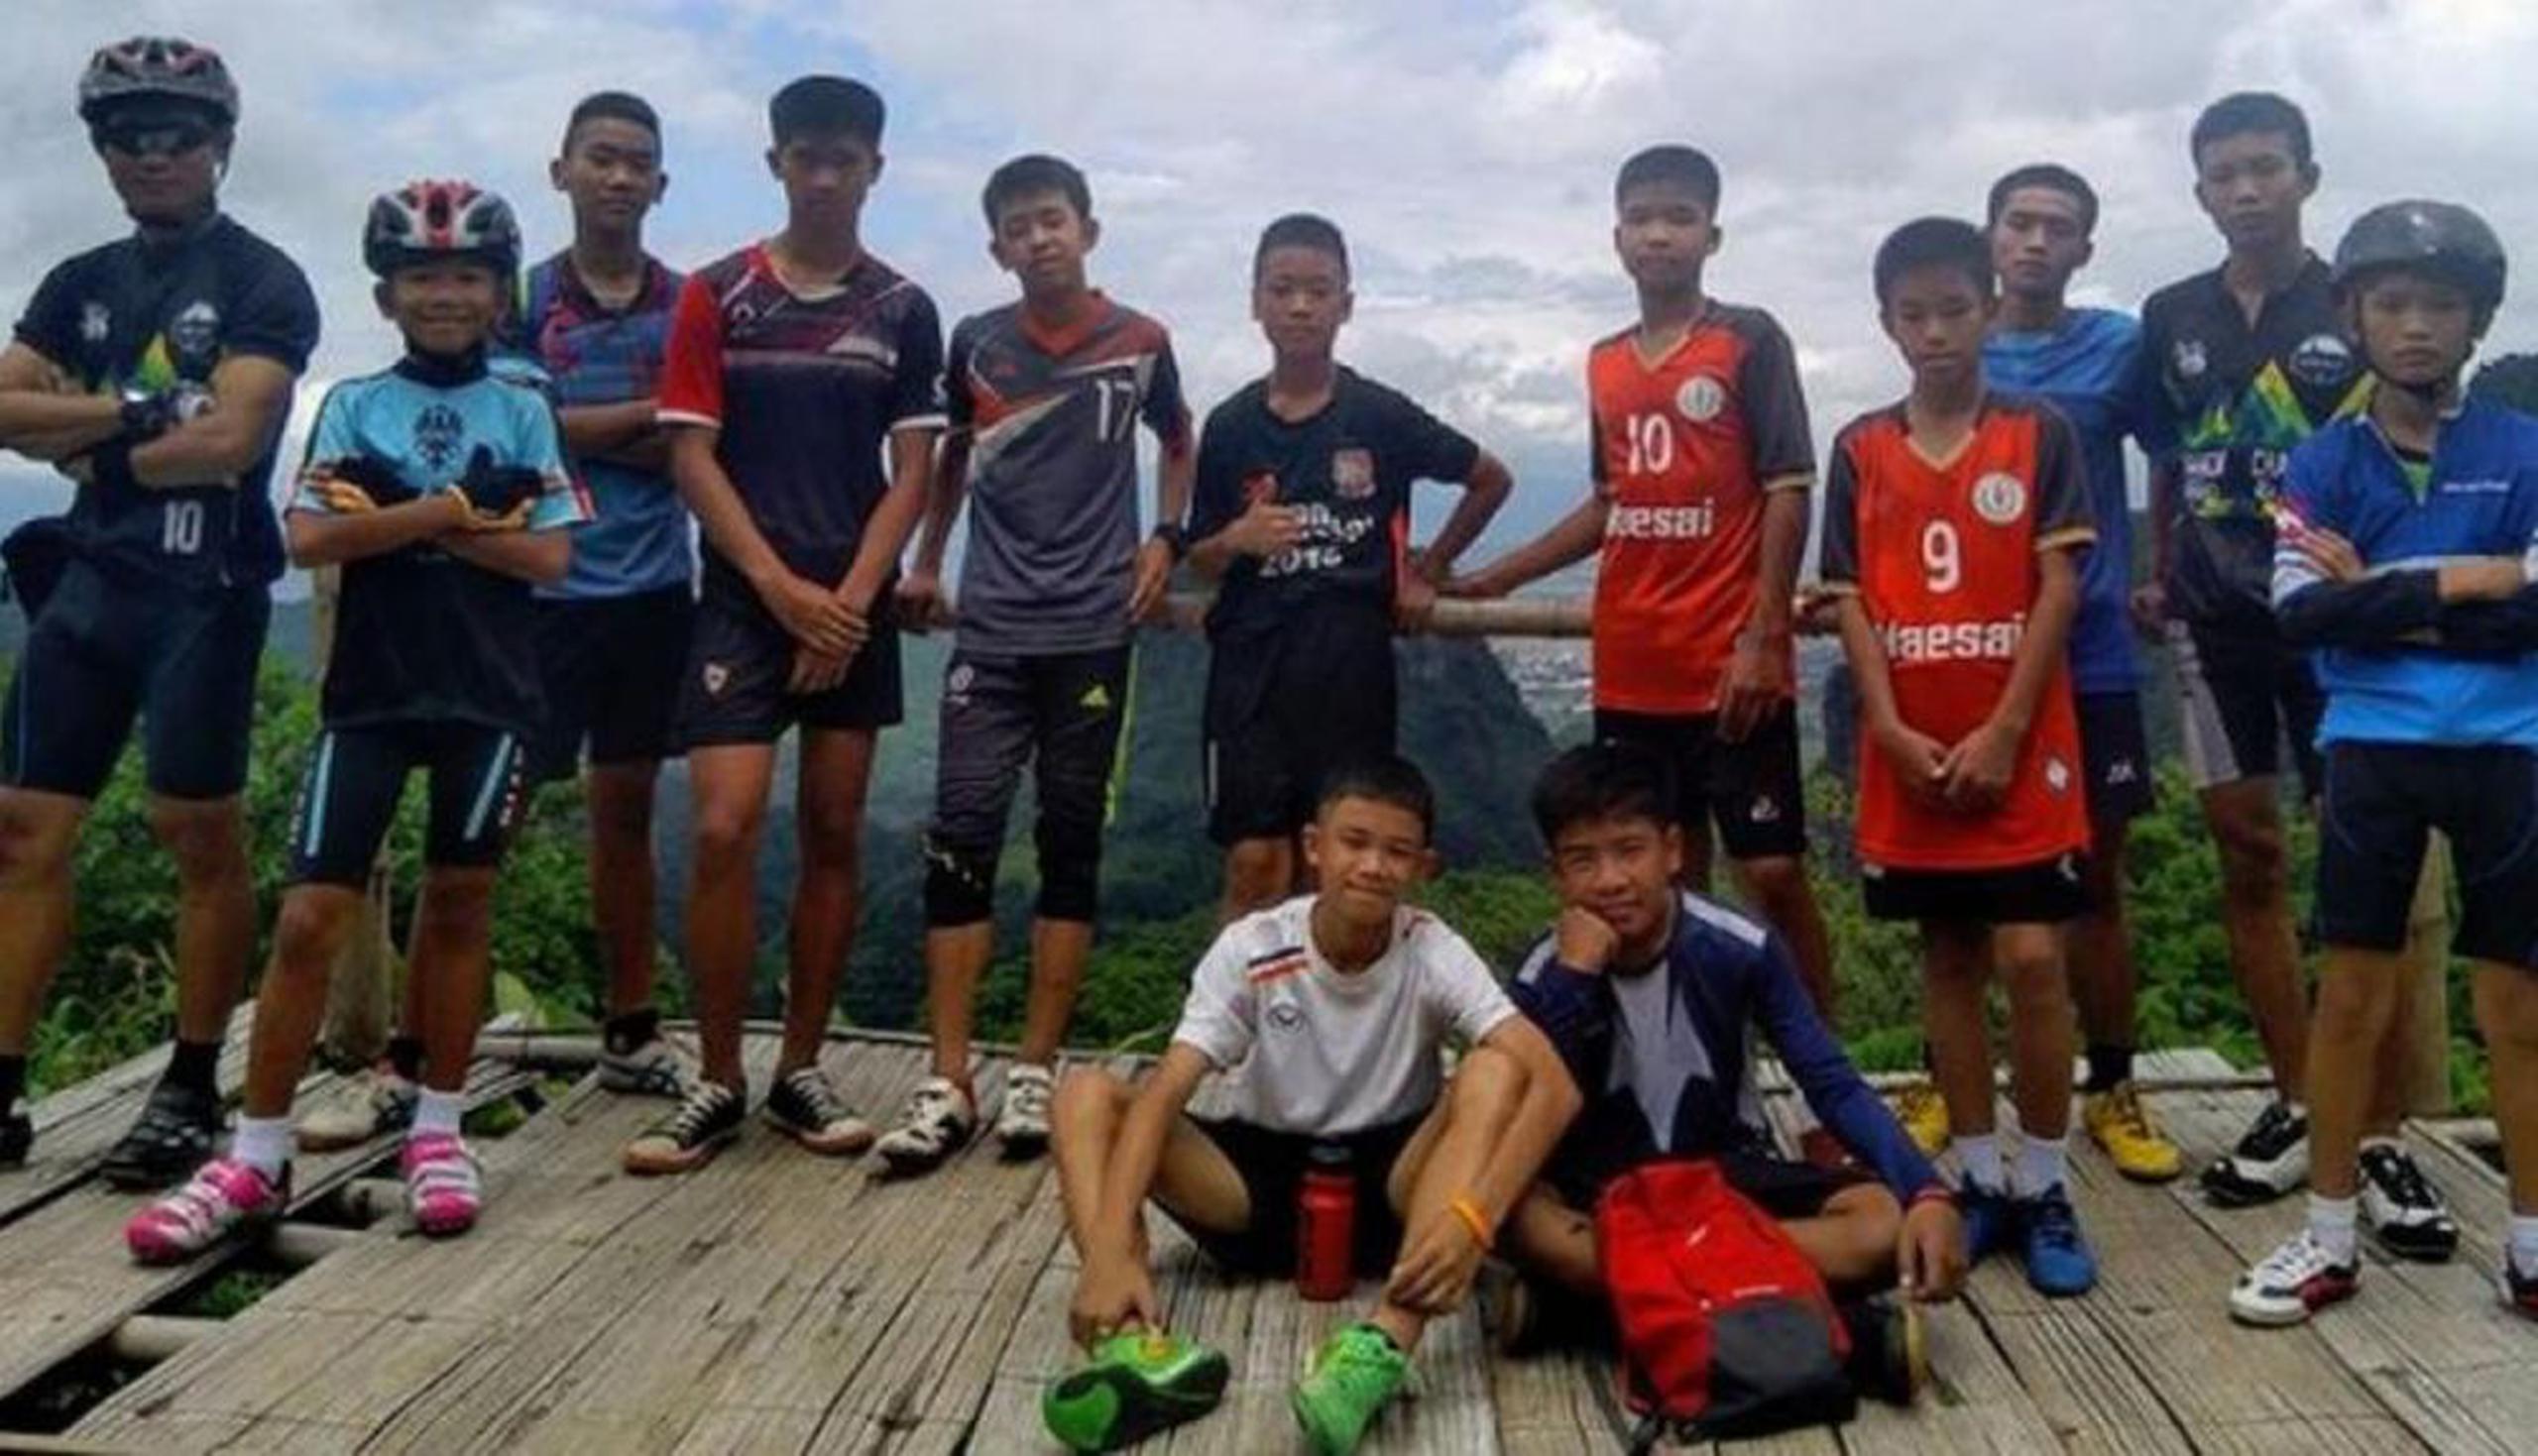 Los 12 niños futbolistas y su entrenador entraron a la cueva el 23 de junio. (GDA)